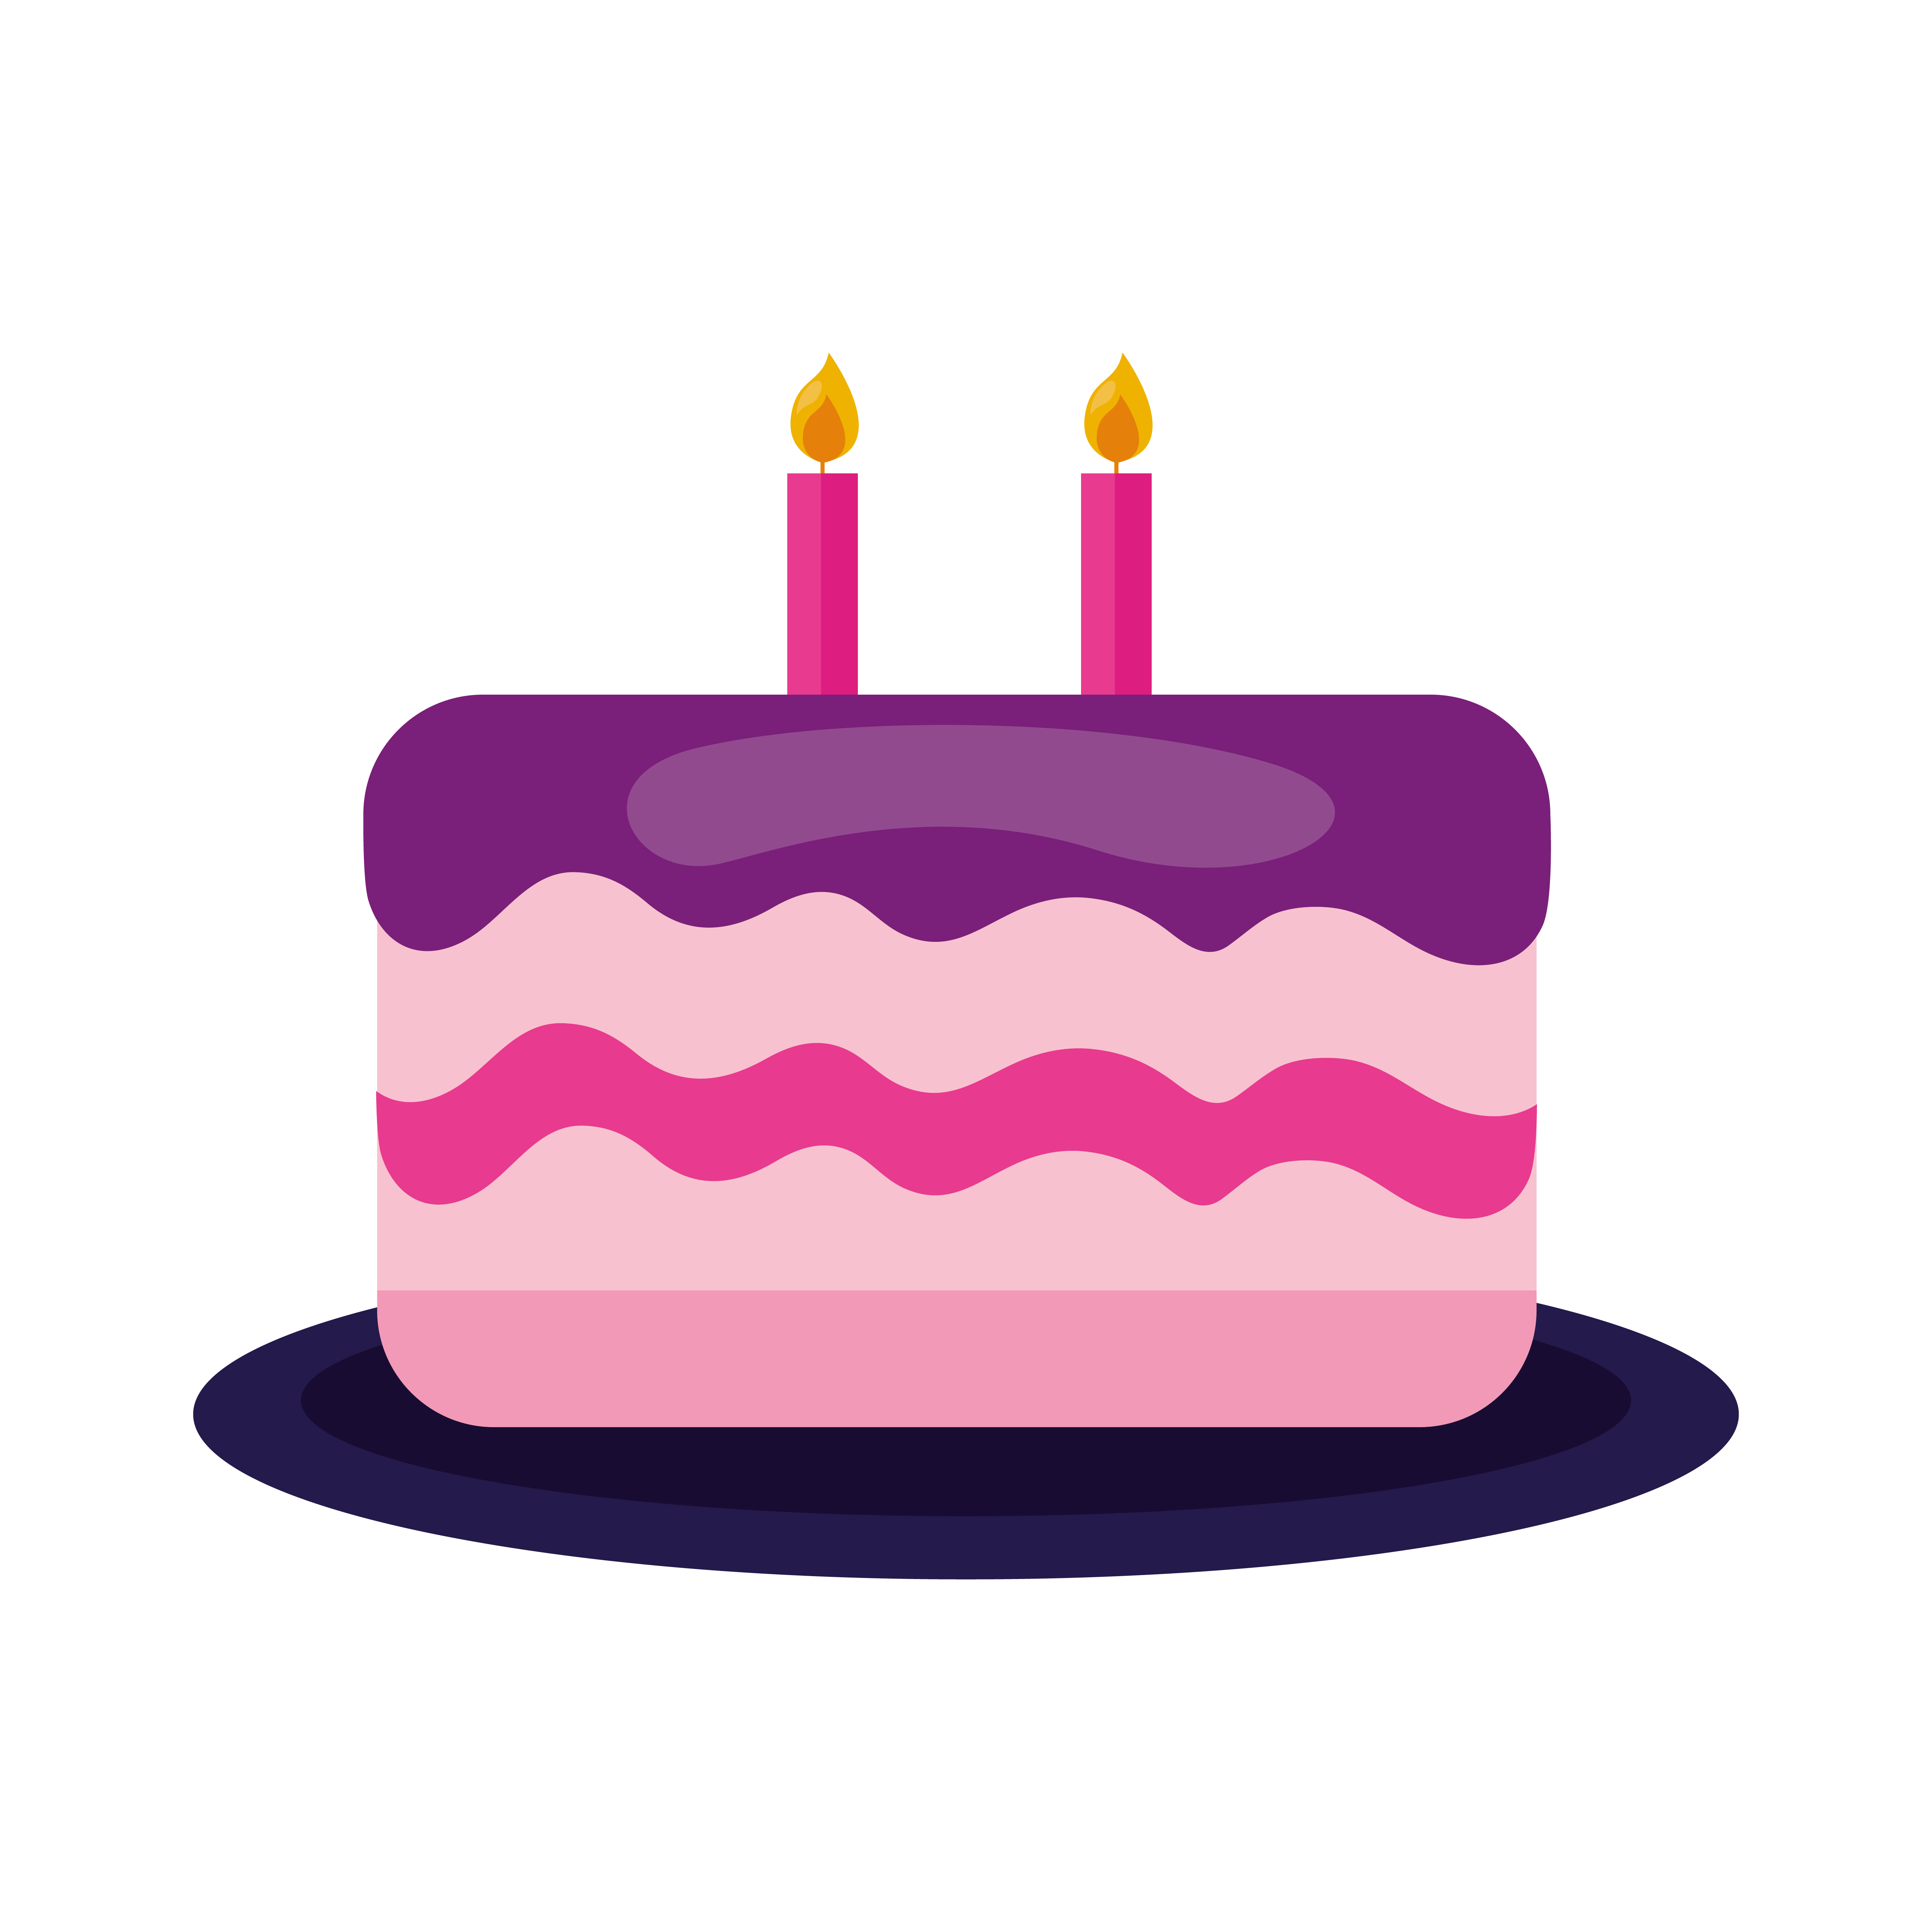 Happy Birthday Cake Vector Design 2726936 Vector Art At Vecteezy